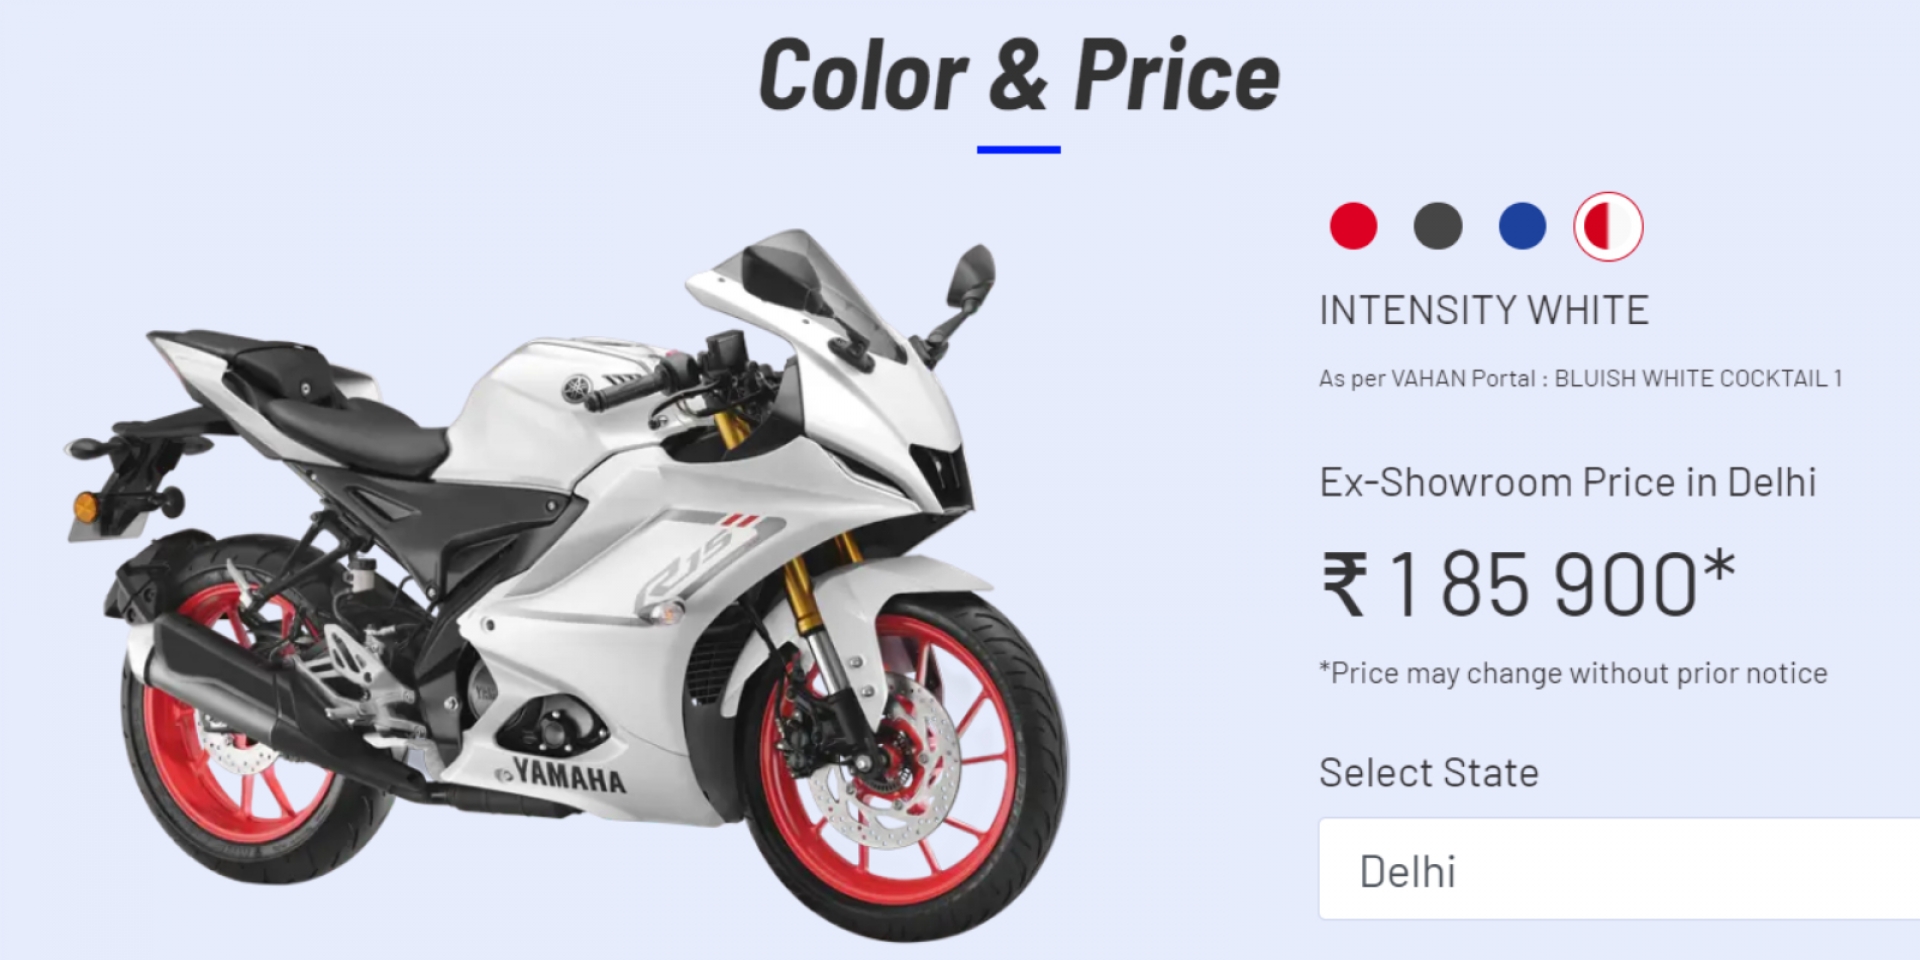 R7同款外觀 Yamaha R15 V4超帥Intensity White塗裝 印度售價7萬有找